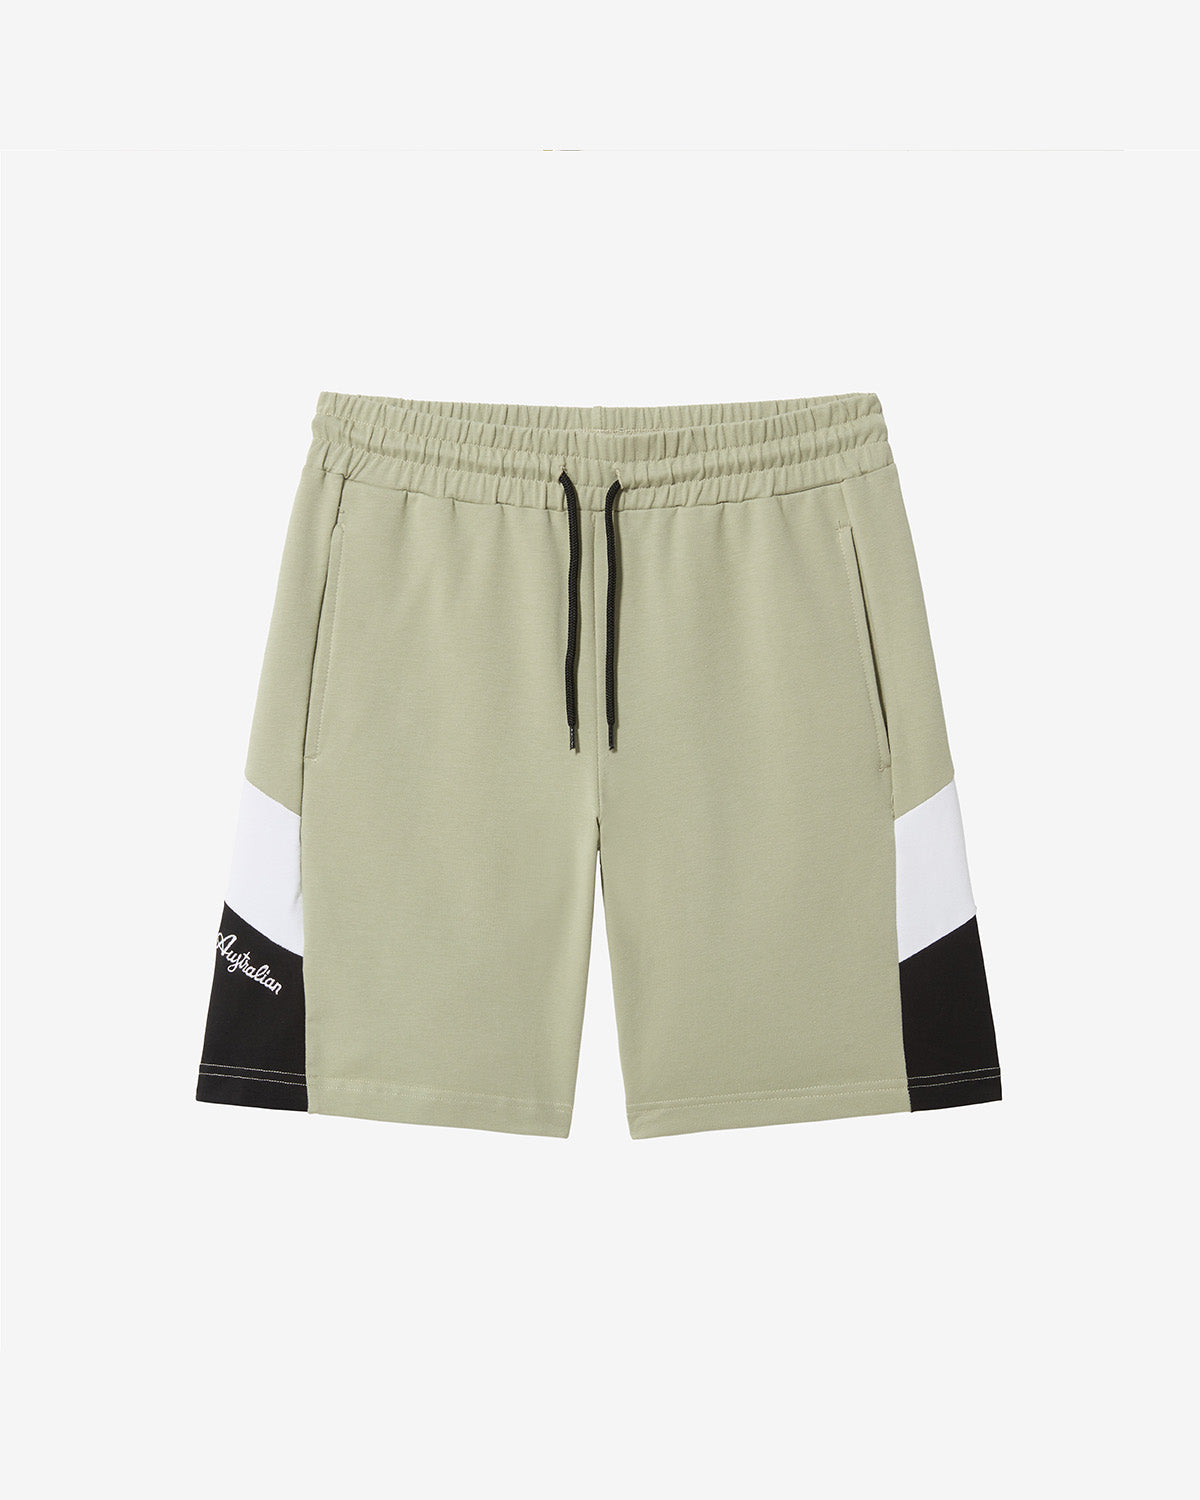 Icon Shorts: Australian Sportswear